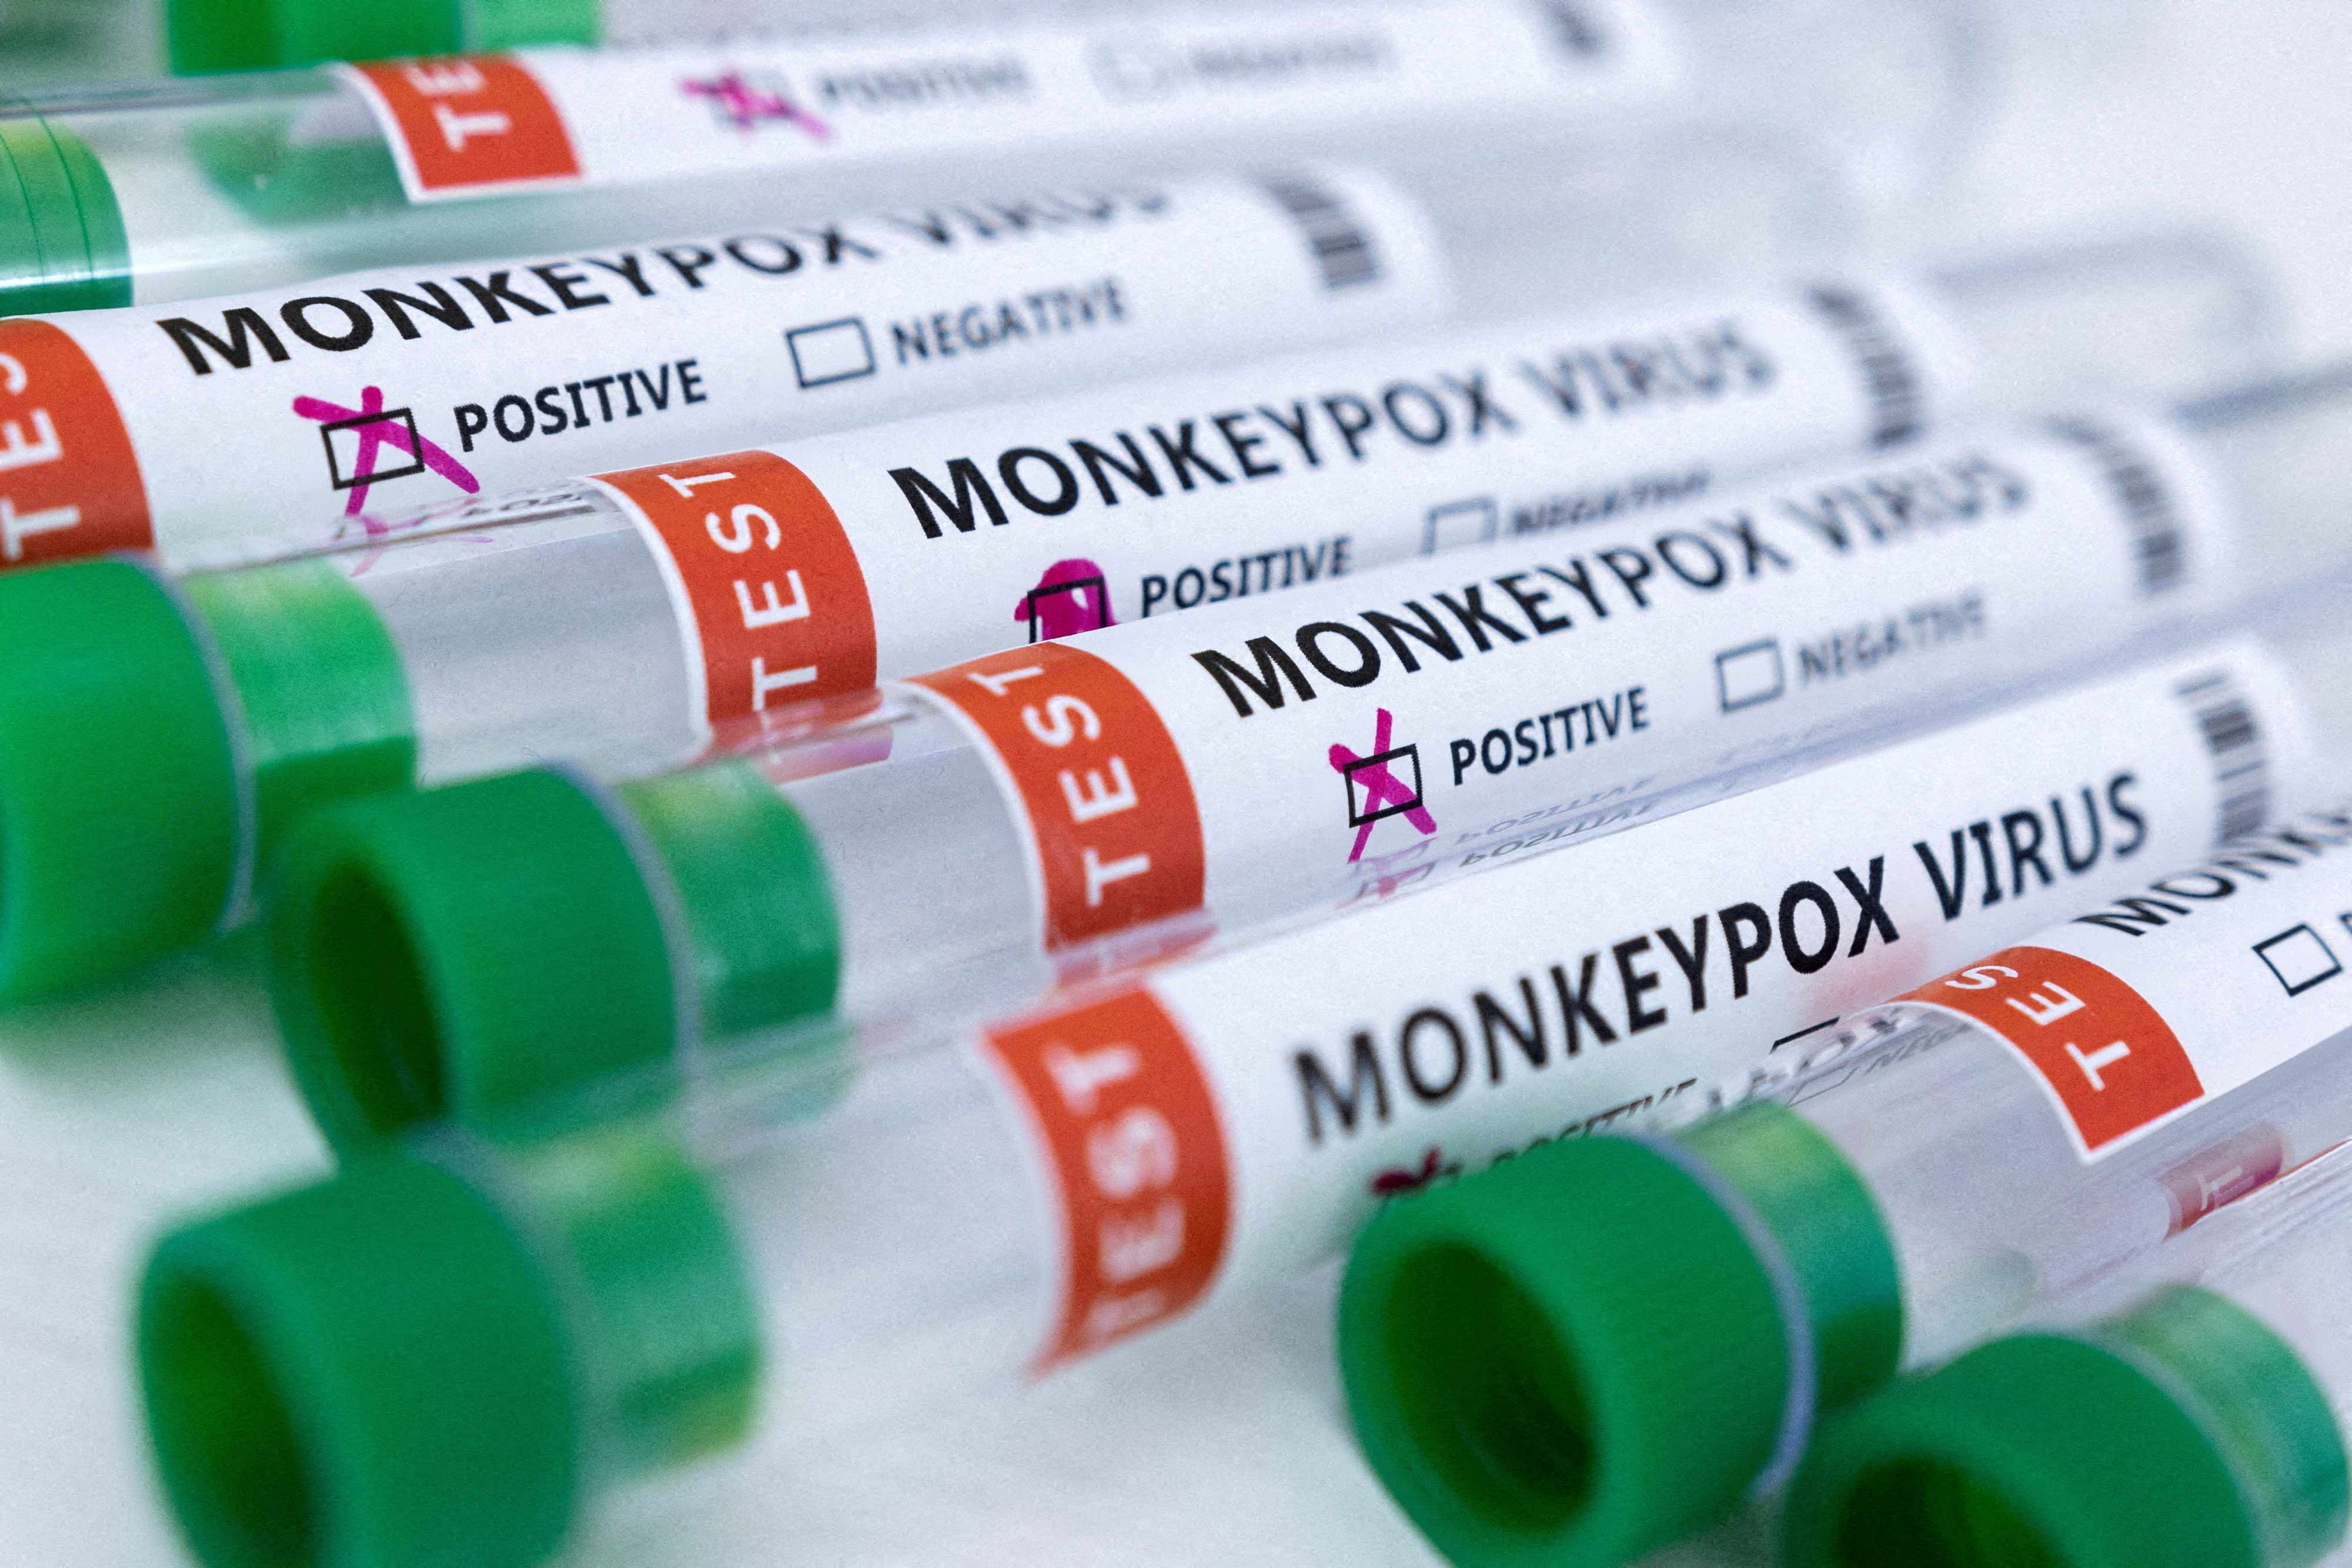 Biden announces White House monkeypox response team with 3 states declaring emergencies